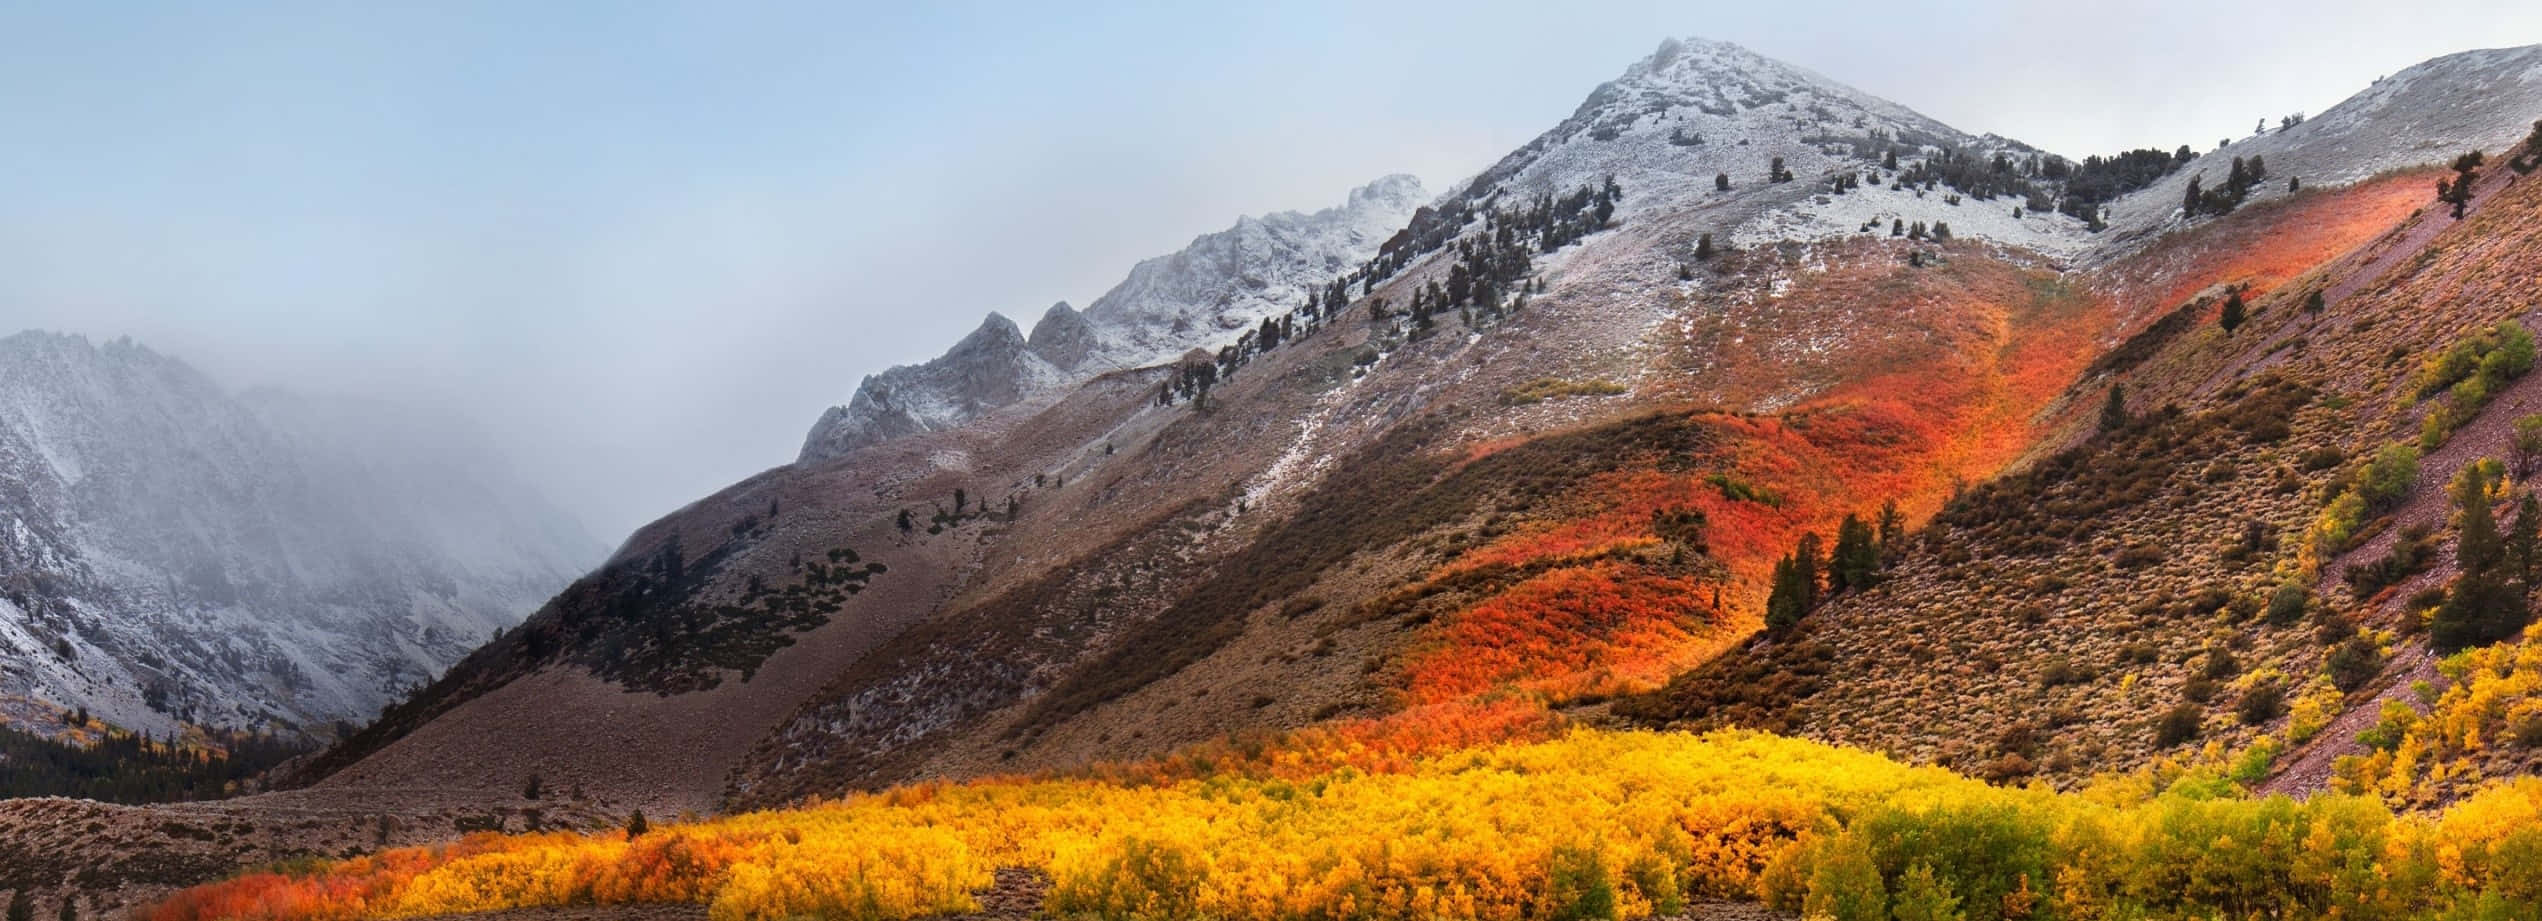 Enjoy the Natural Beauty of High Sierra Wallpaper